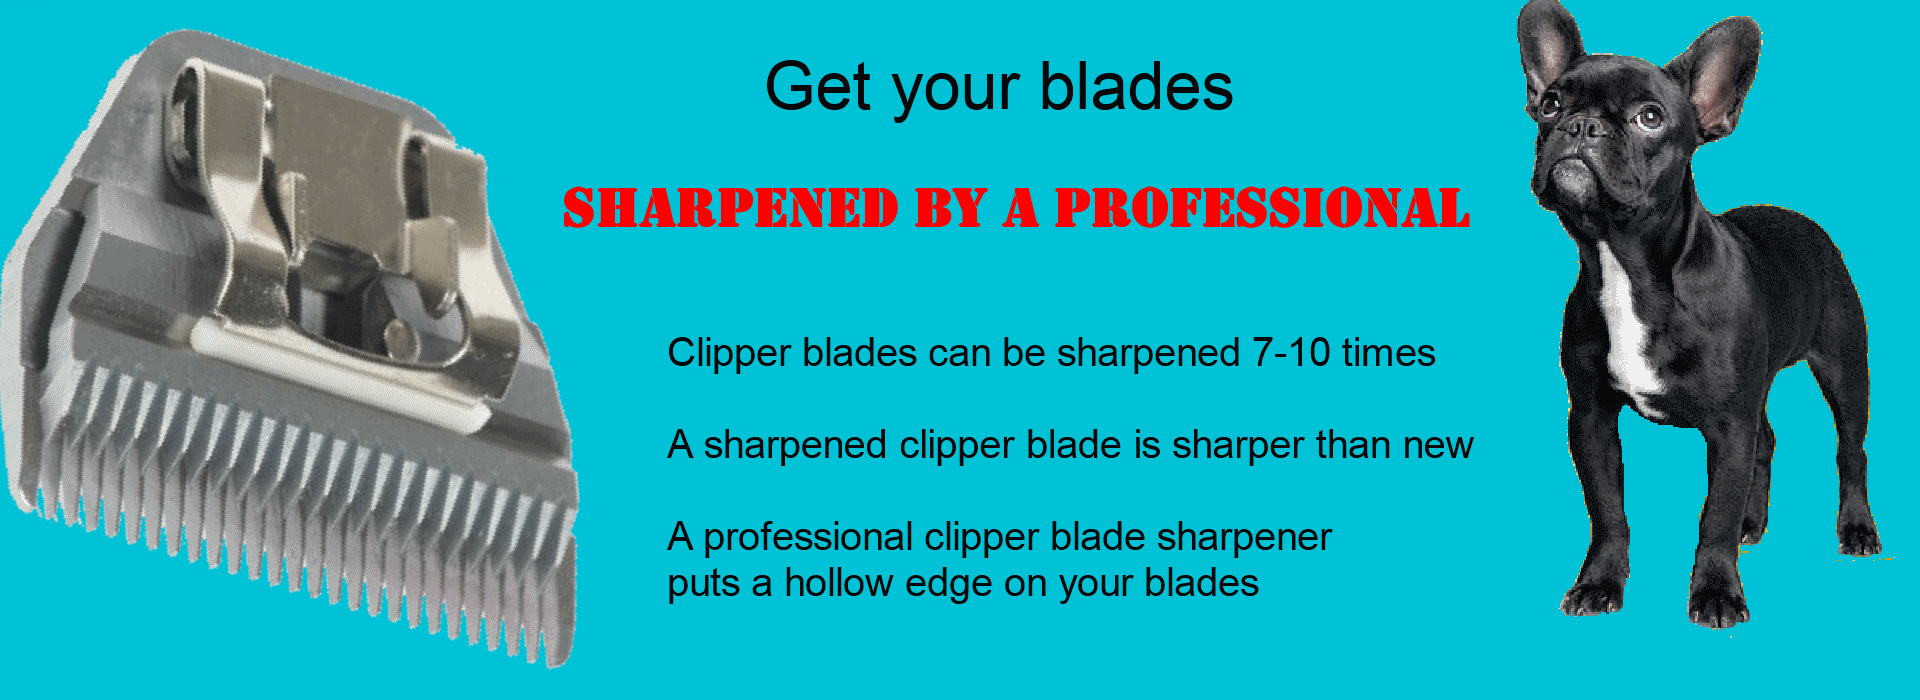 A sharper clipper blade